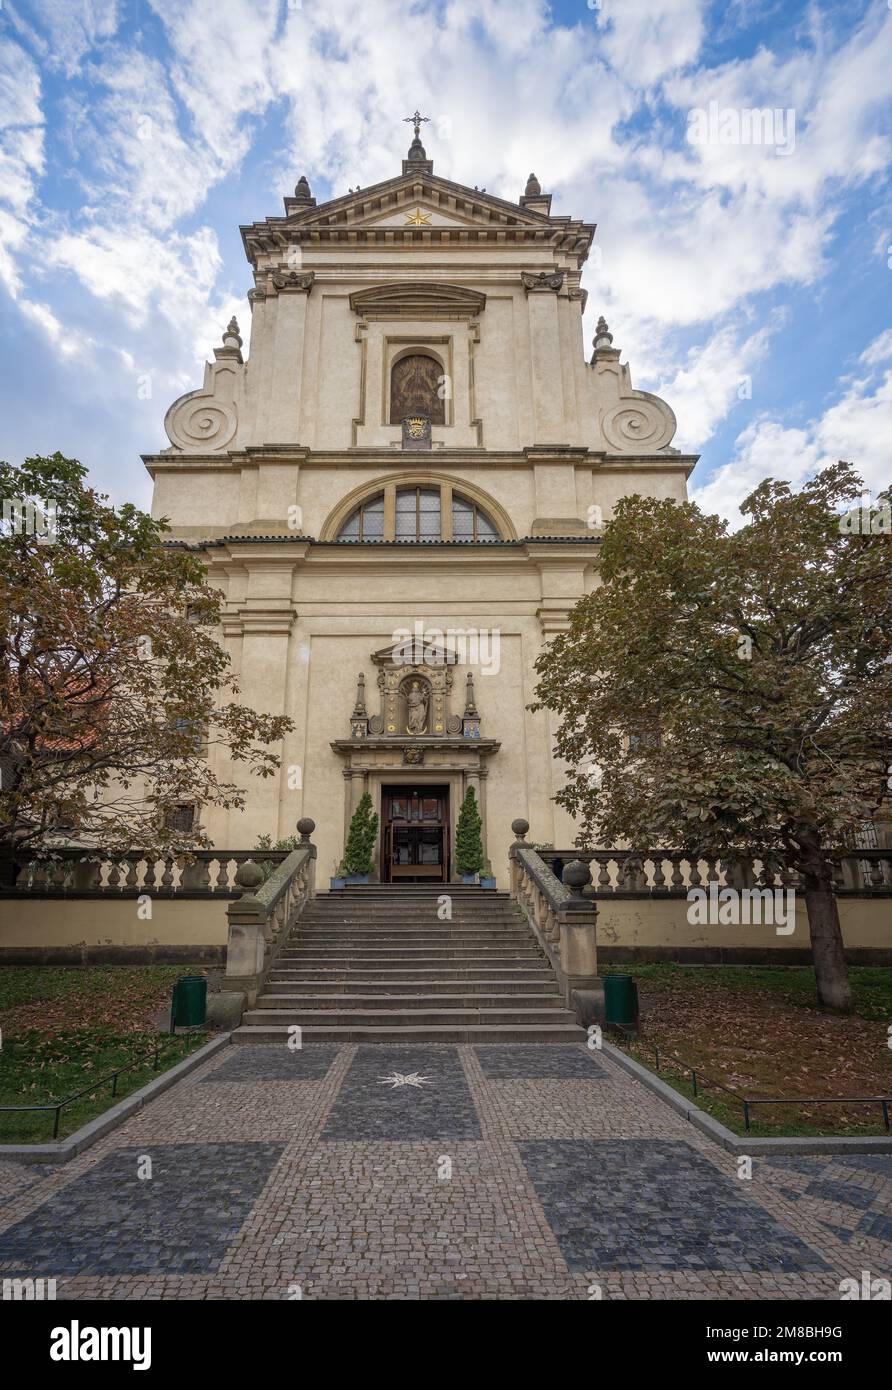 Chiesa di nostra Signora delle vittorie (Santuario del Bambino Gesù di Praga) facciata - Praga, Repubblica Ceca Foto Stock